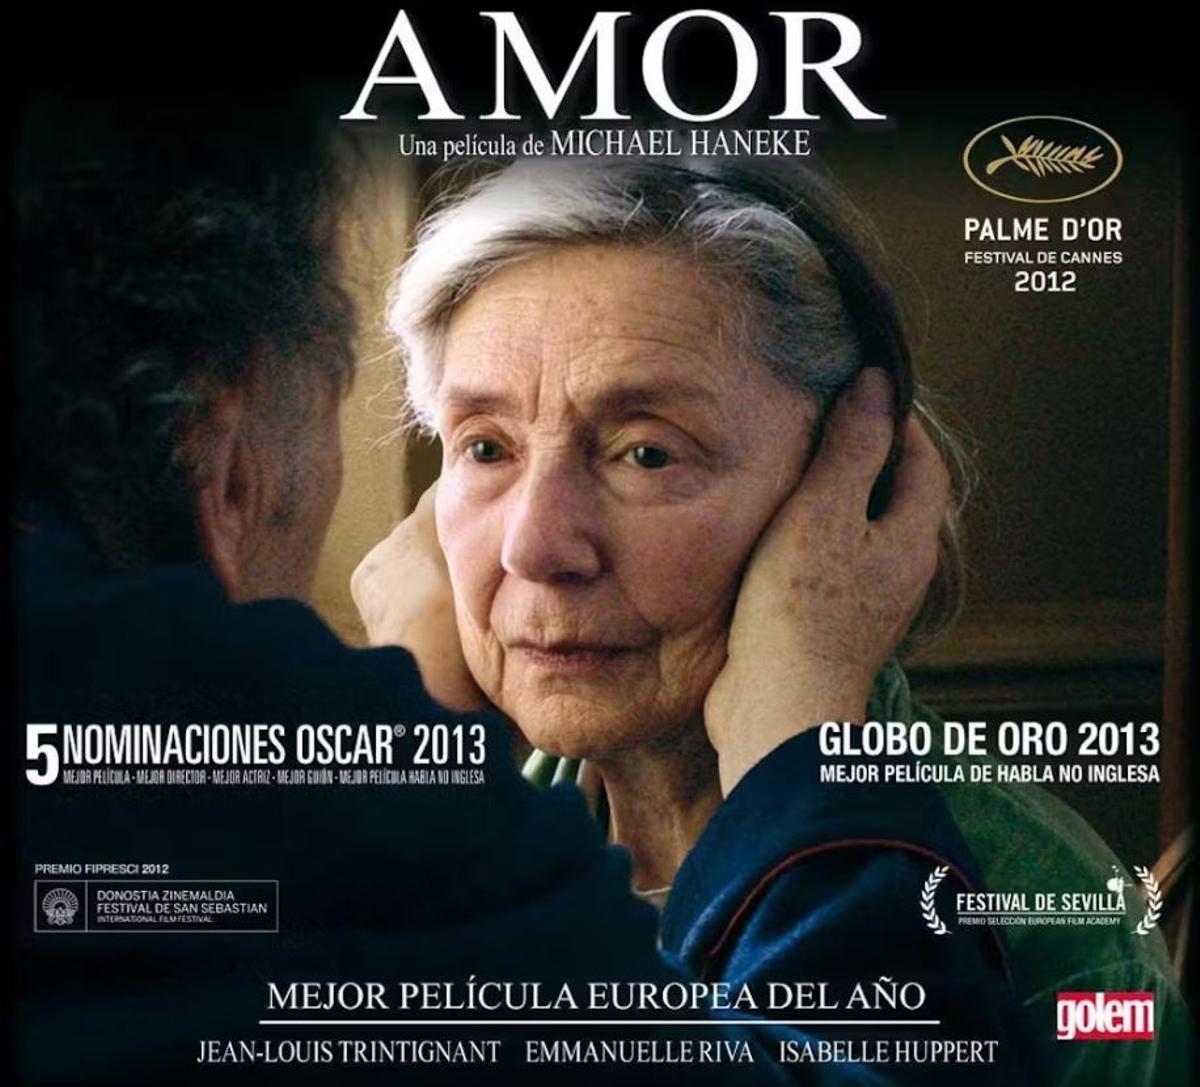 La película Amor, dirigida por Michael Haneke en 2012, es otra de las empleadas en experimentos de neurocinemática.